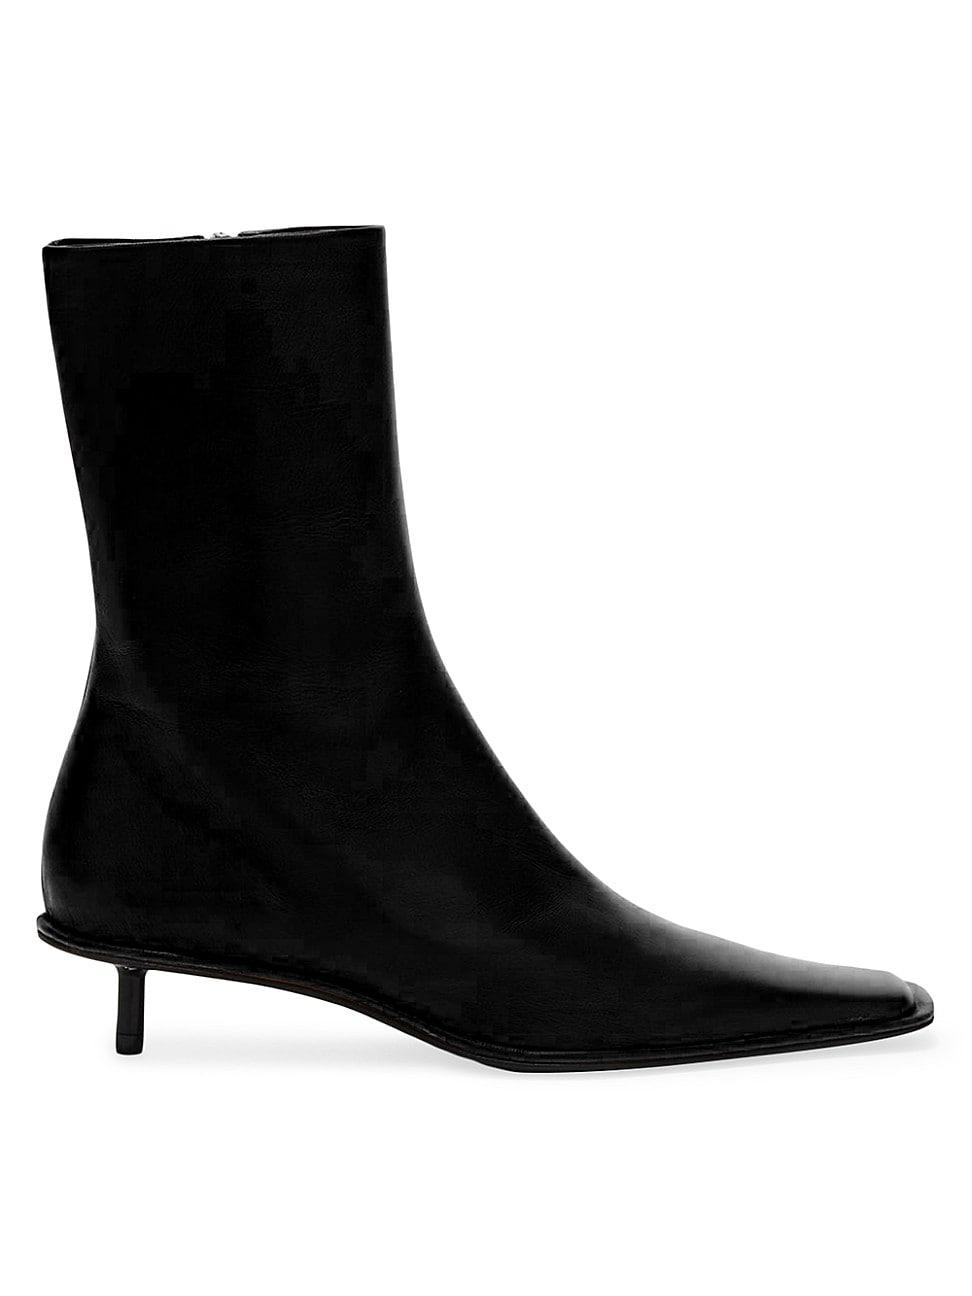 Jil Sander 35mm Leather Kitten-heel Ankle Boots in Black | Lyst